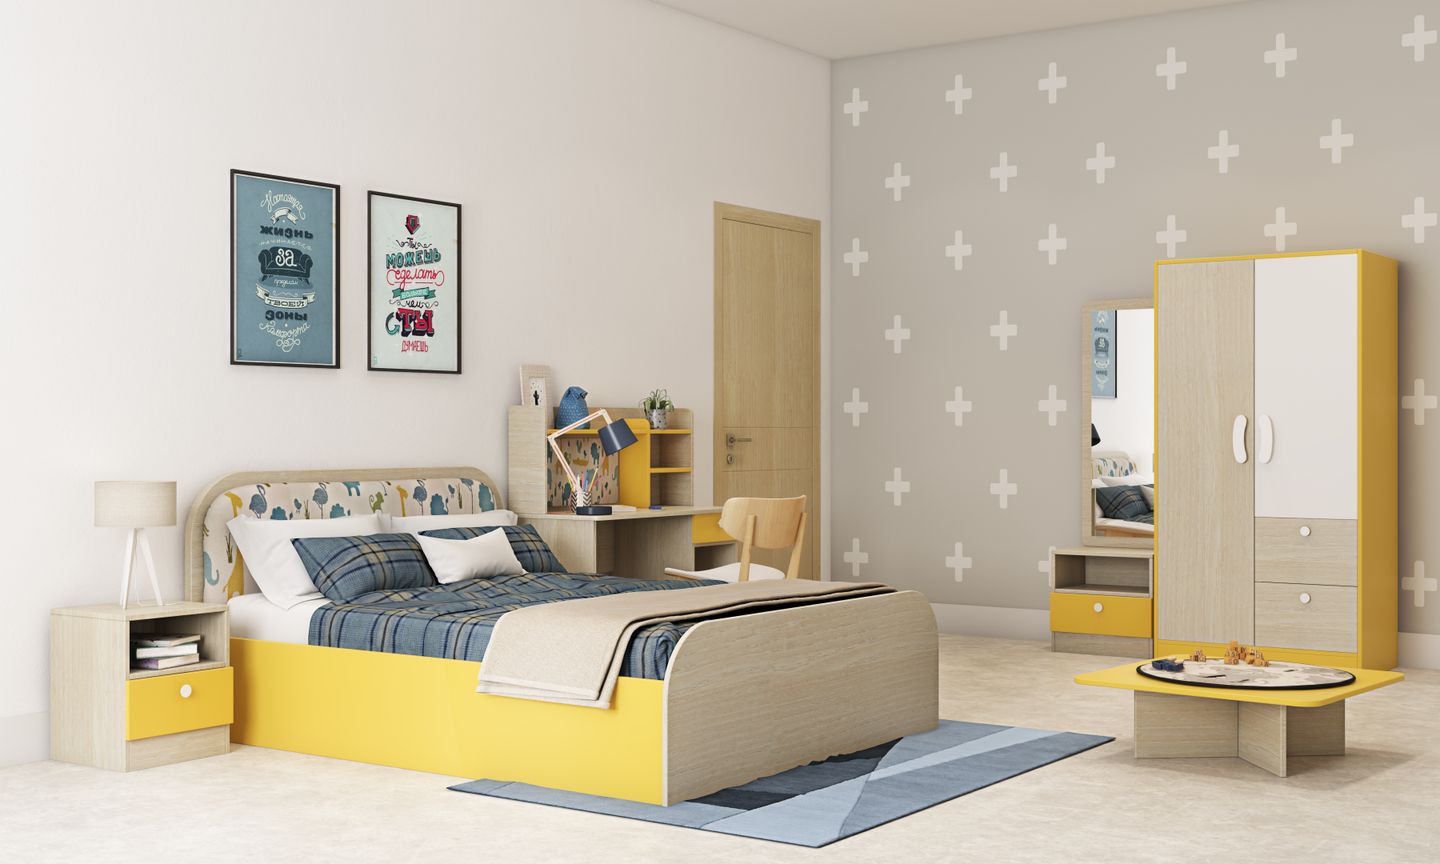 Bisque Kids Bedroom Interior Design